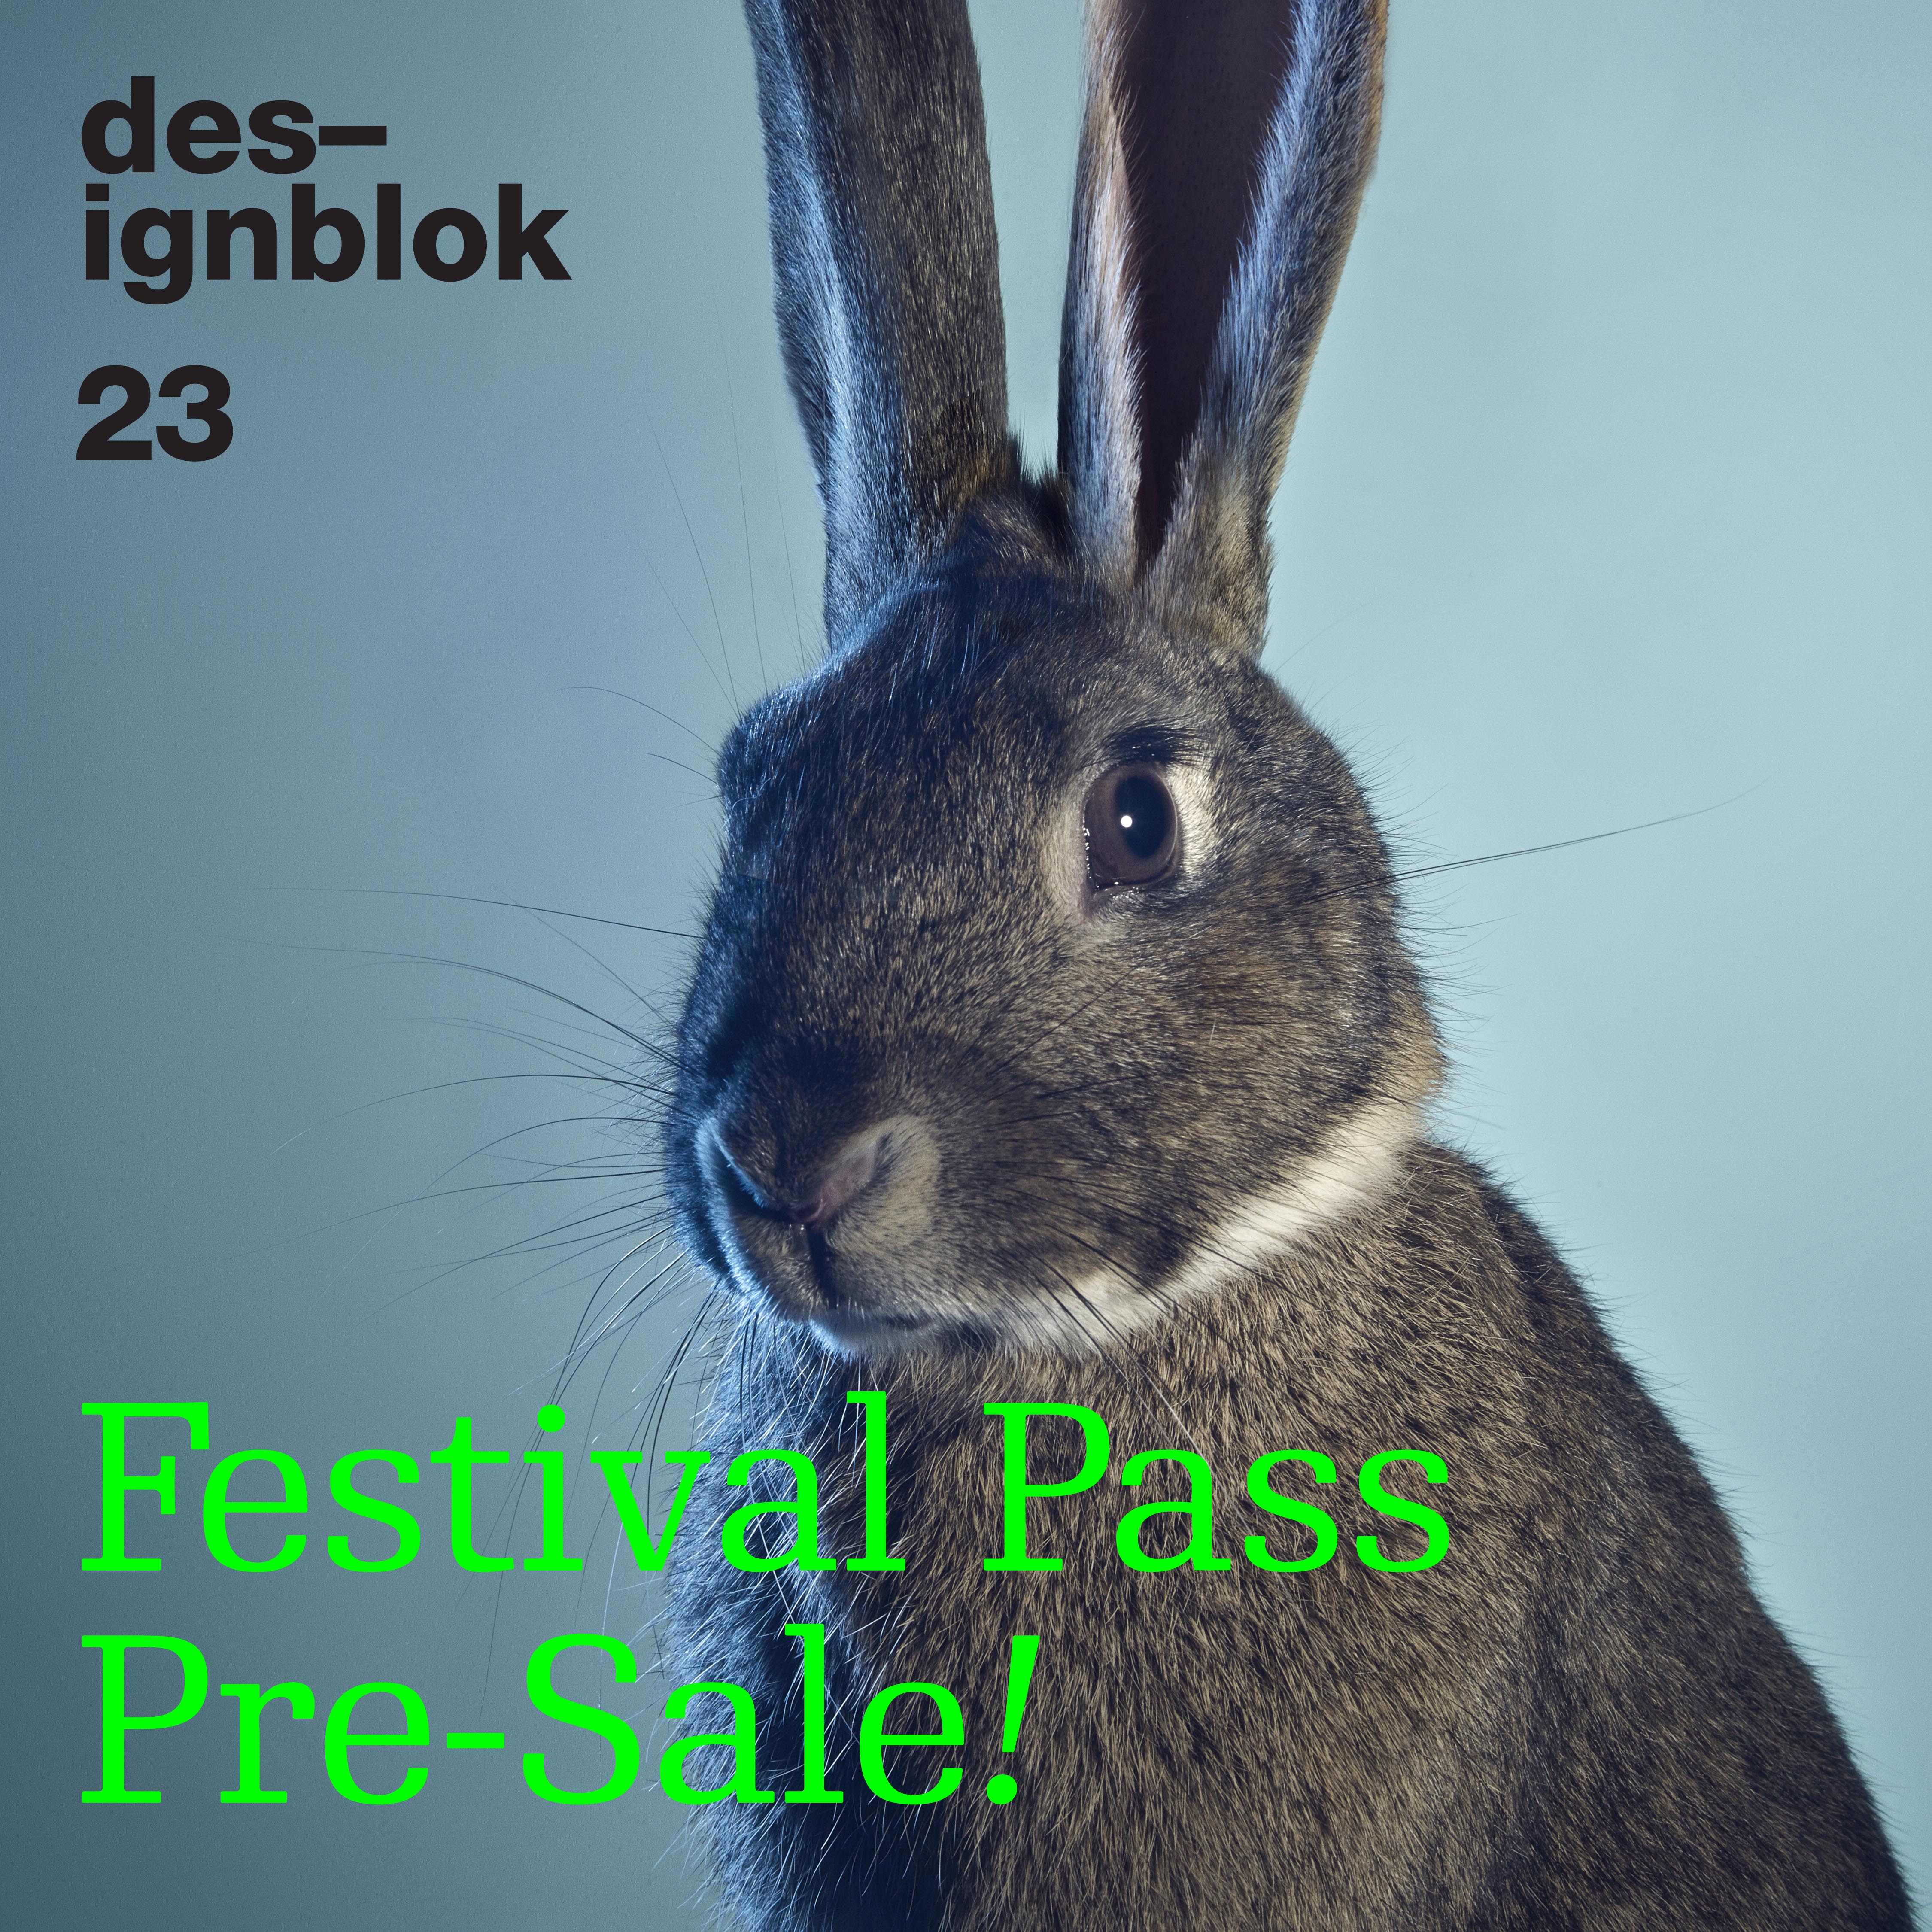 Předprodej zvýhodněných festival passů zahájen!